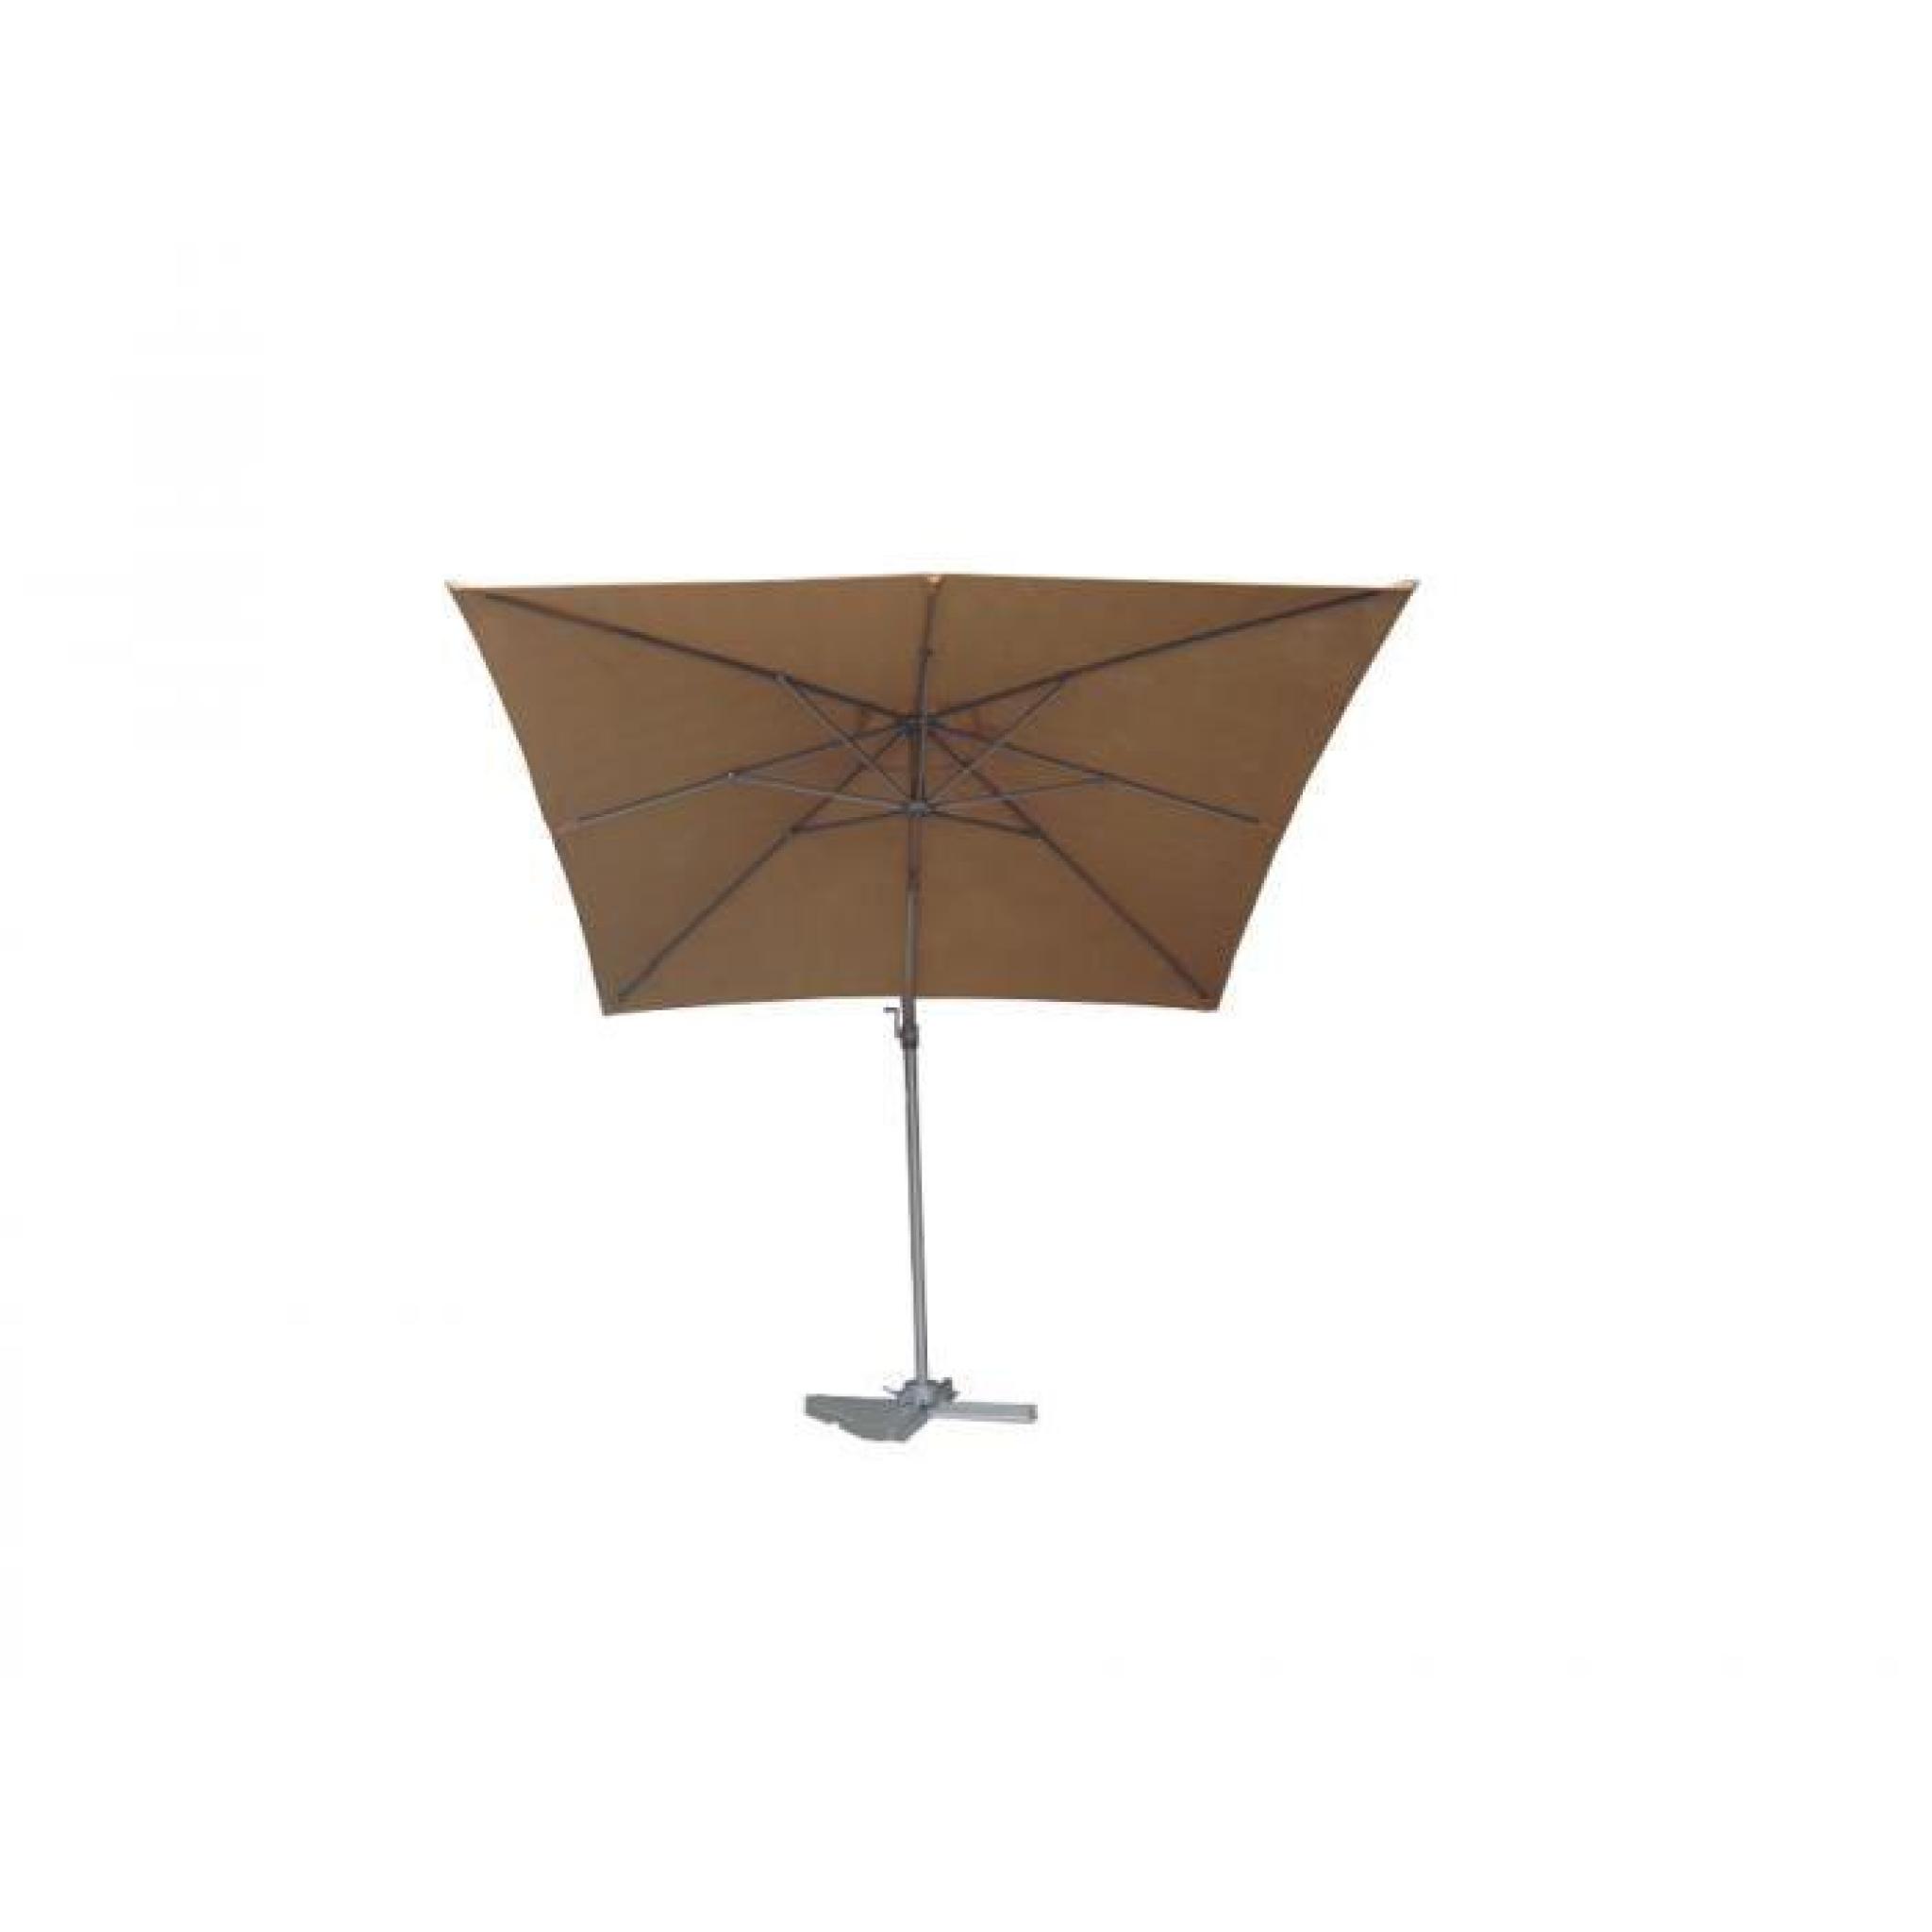 WISLOW chocol parasol 2,5x2,5 pas cher